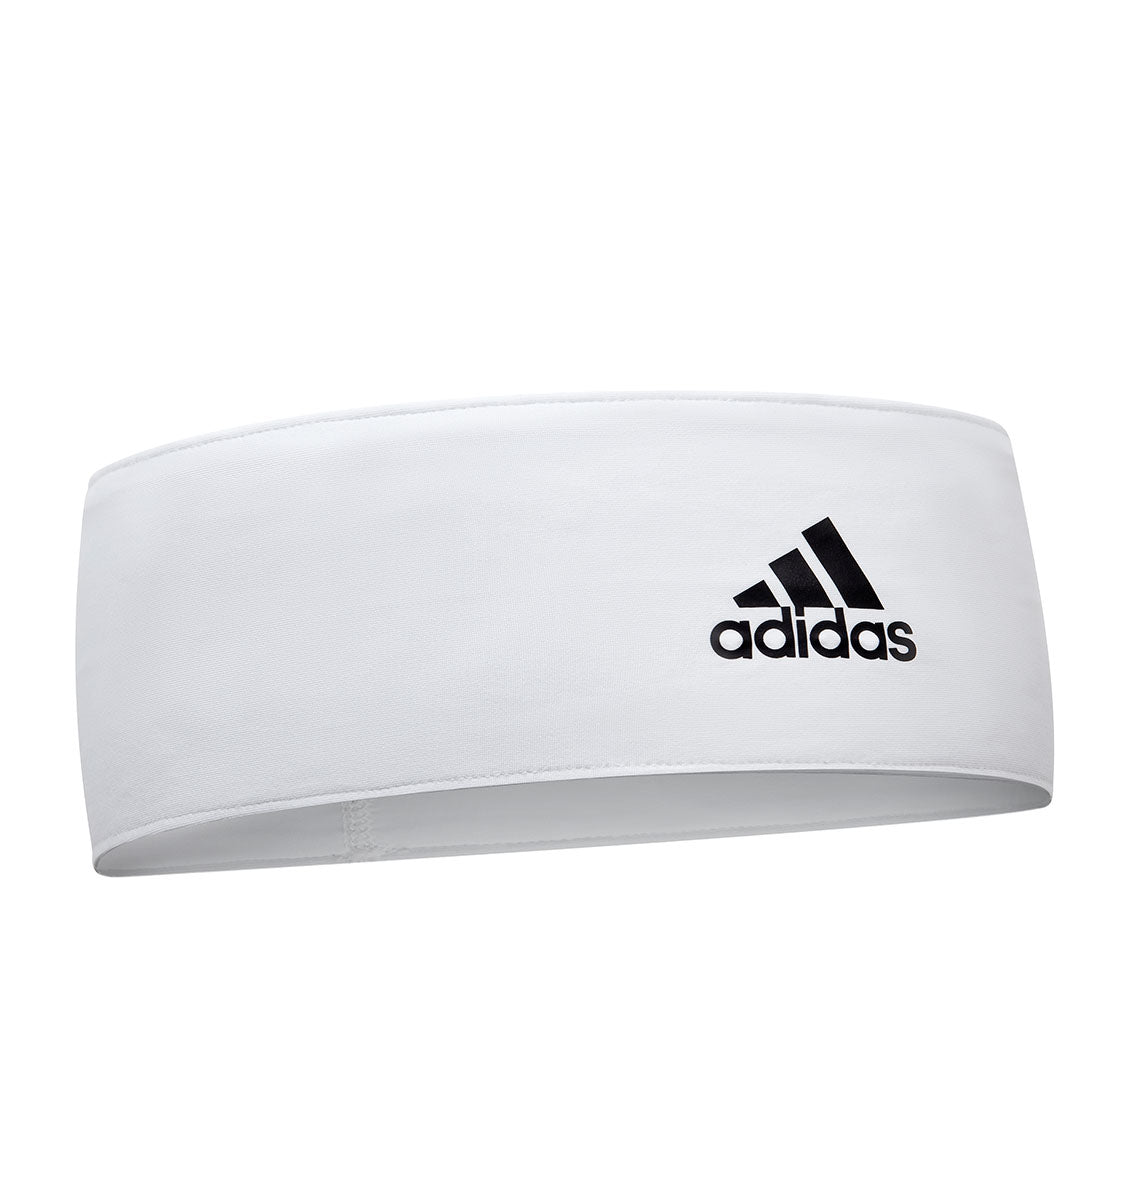 adidas Head Band - White - 1